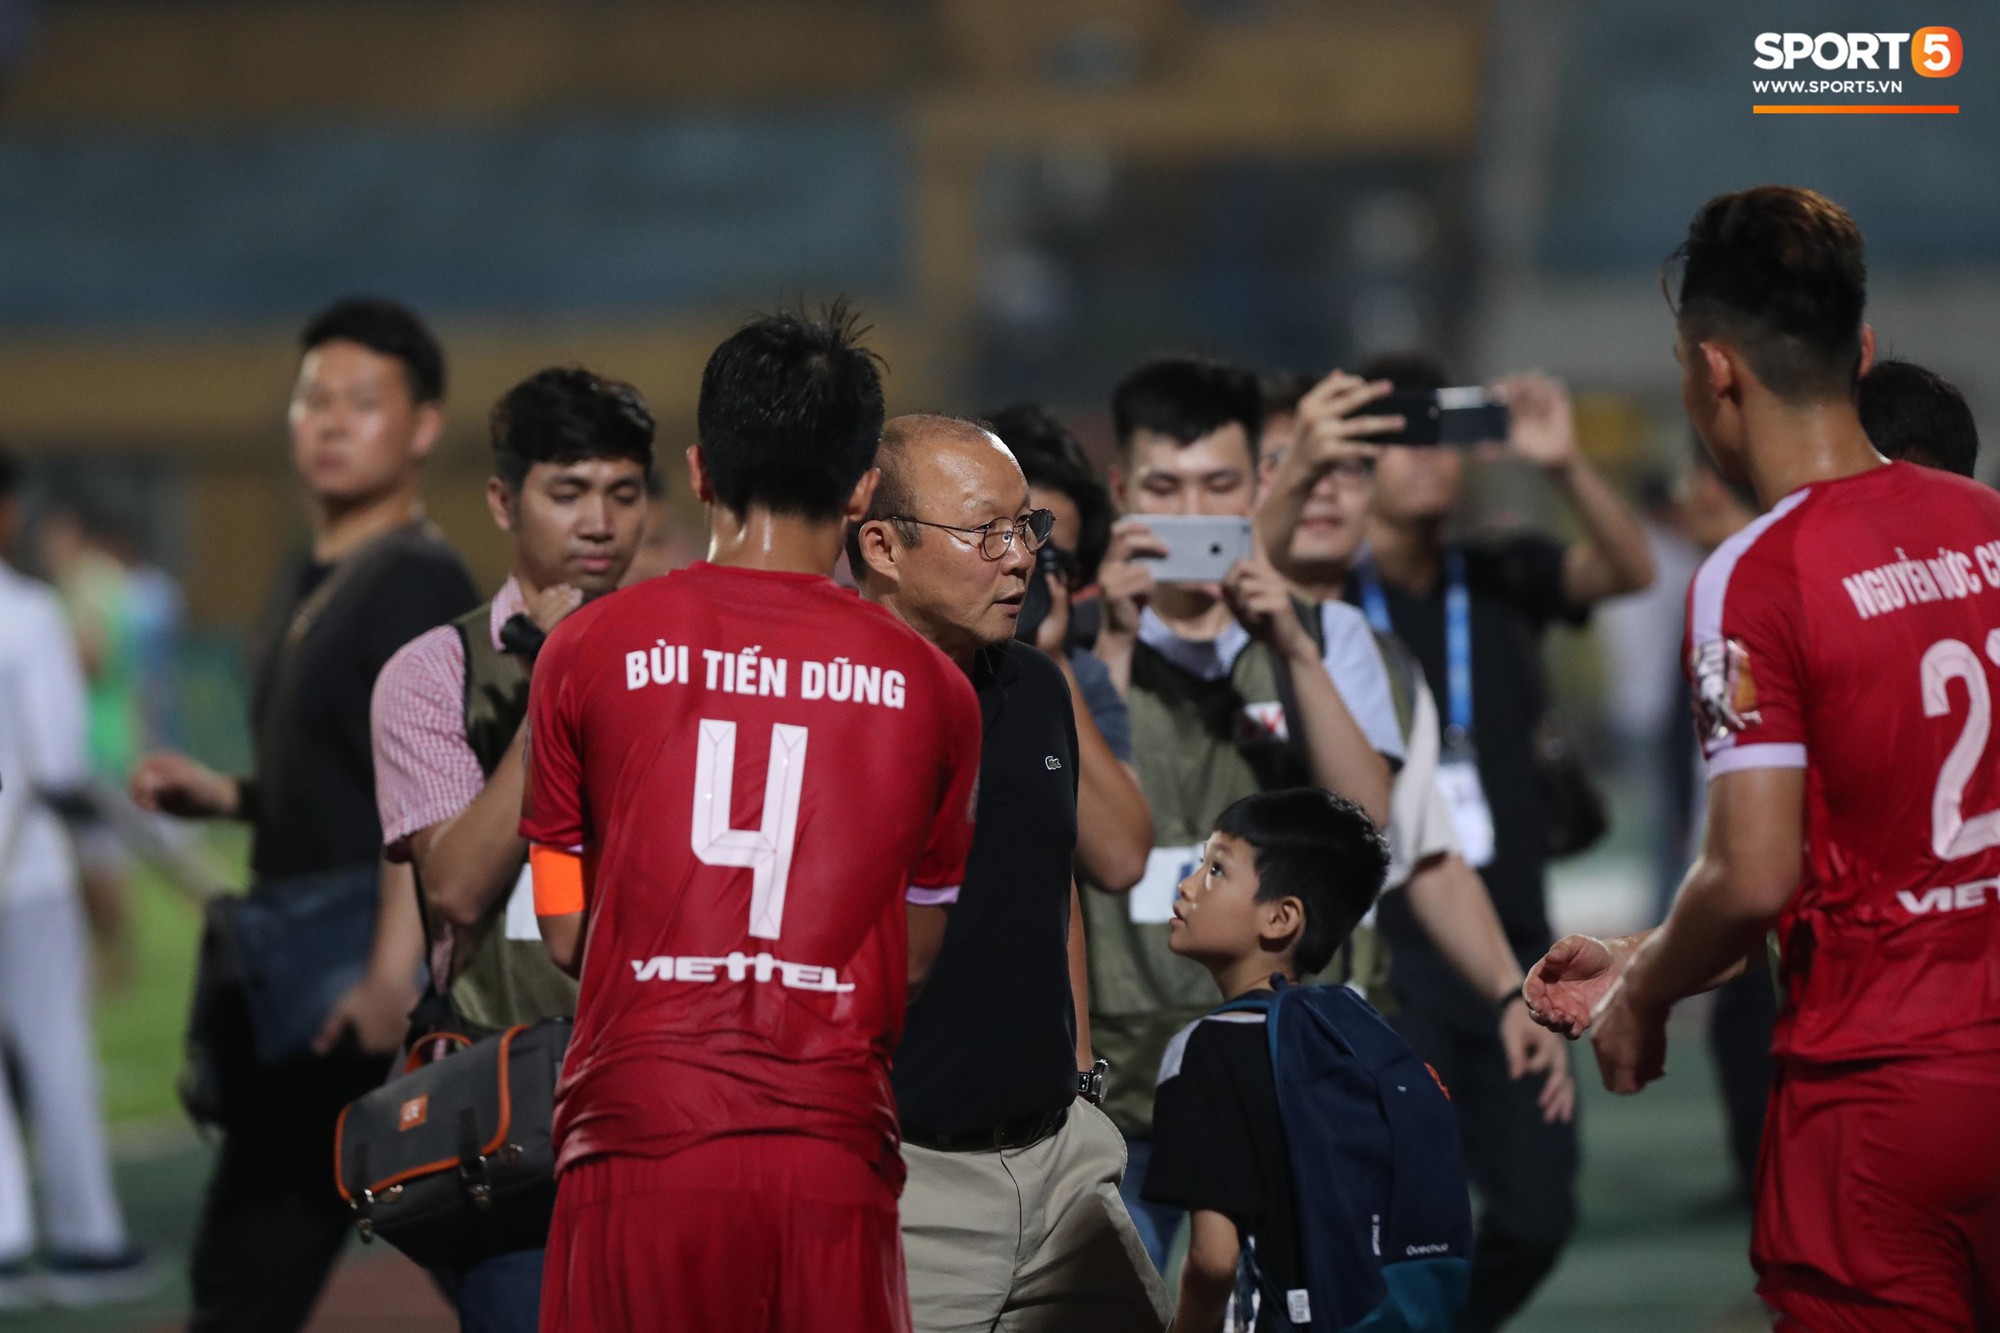 Thầy Park đầy suy tư khi chứng kiến Hải Quế, Tiến Dũng để thủng lưới tới 3 bàn trong trận đấu với Quảng Ninh - Ảnh 9.